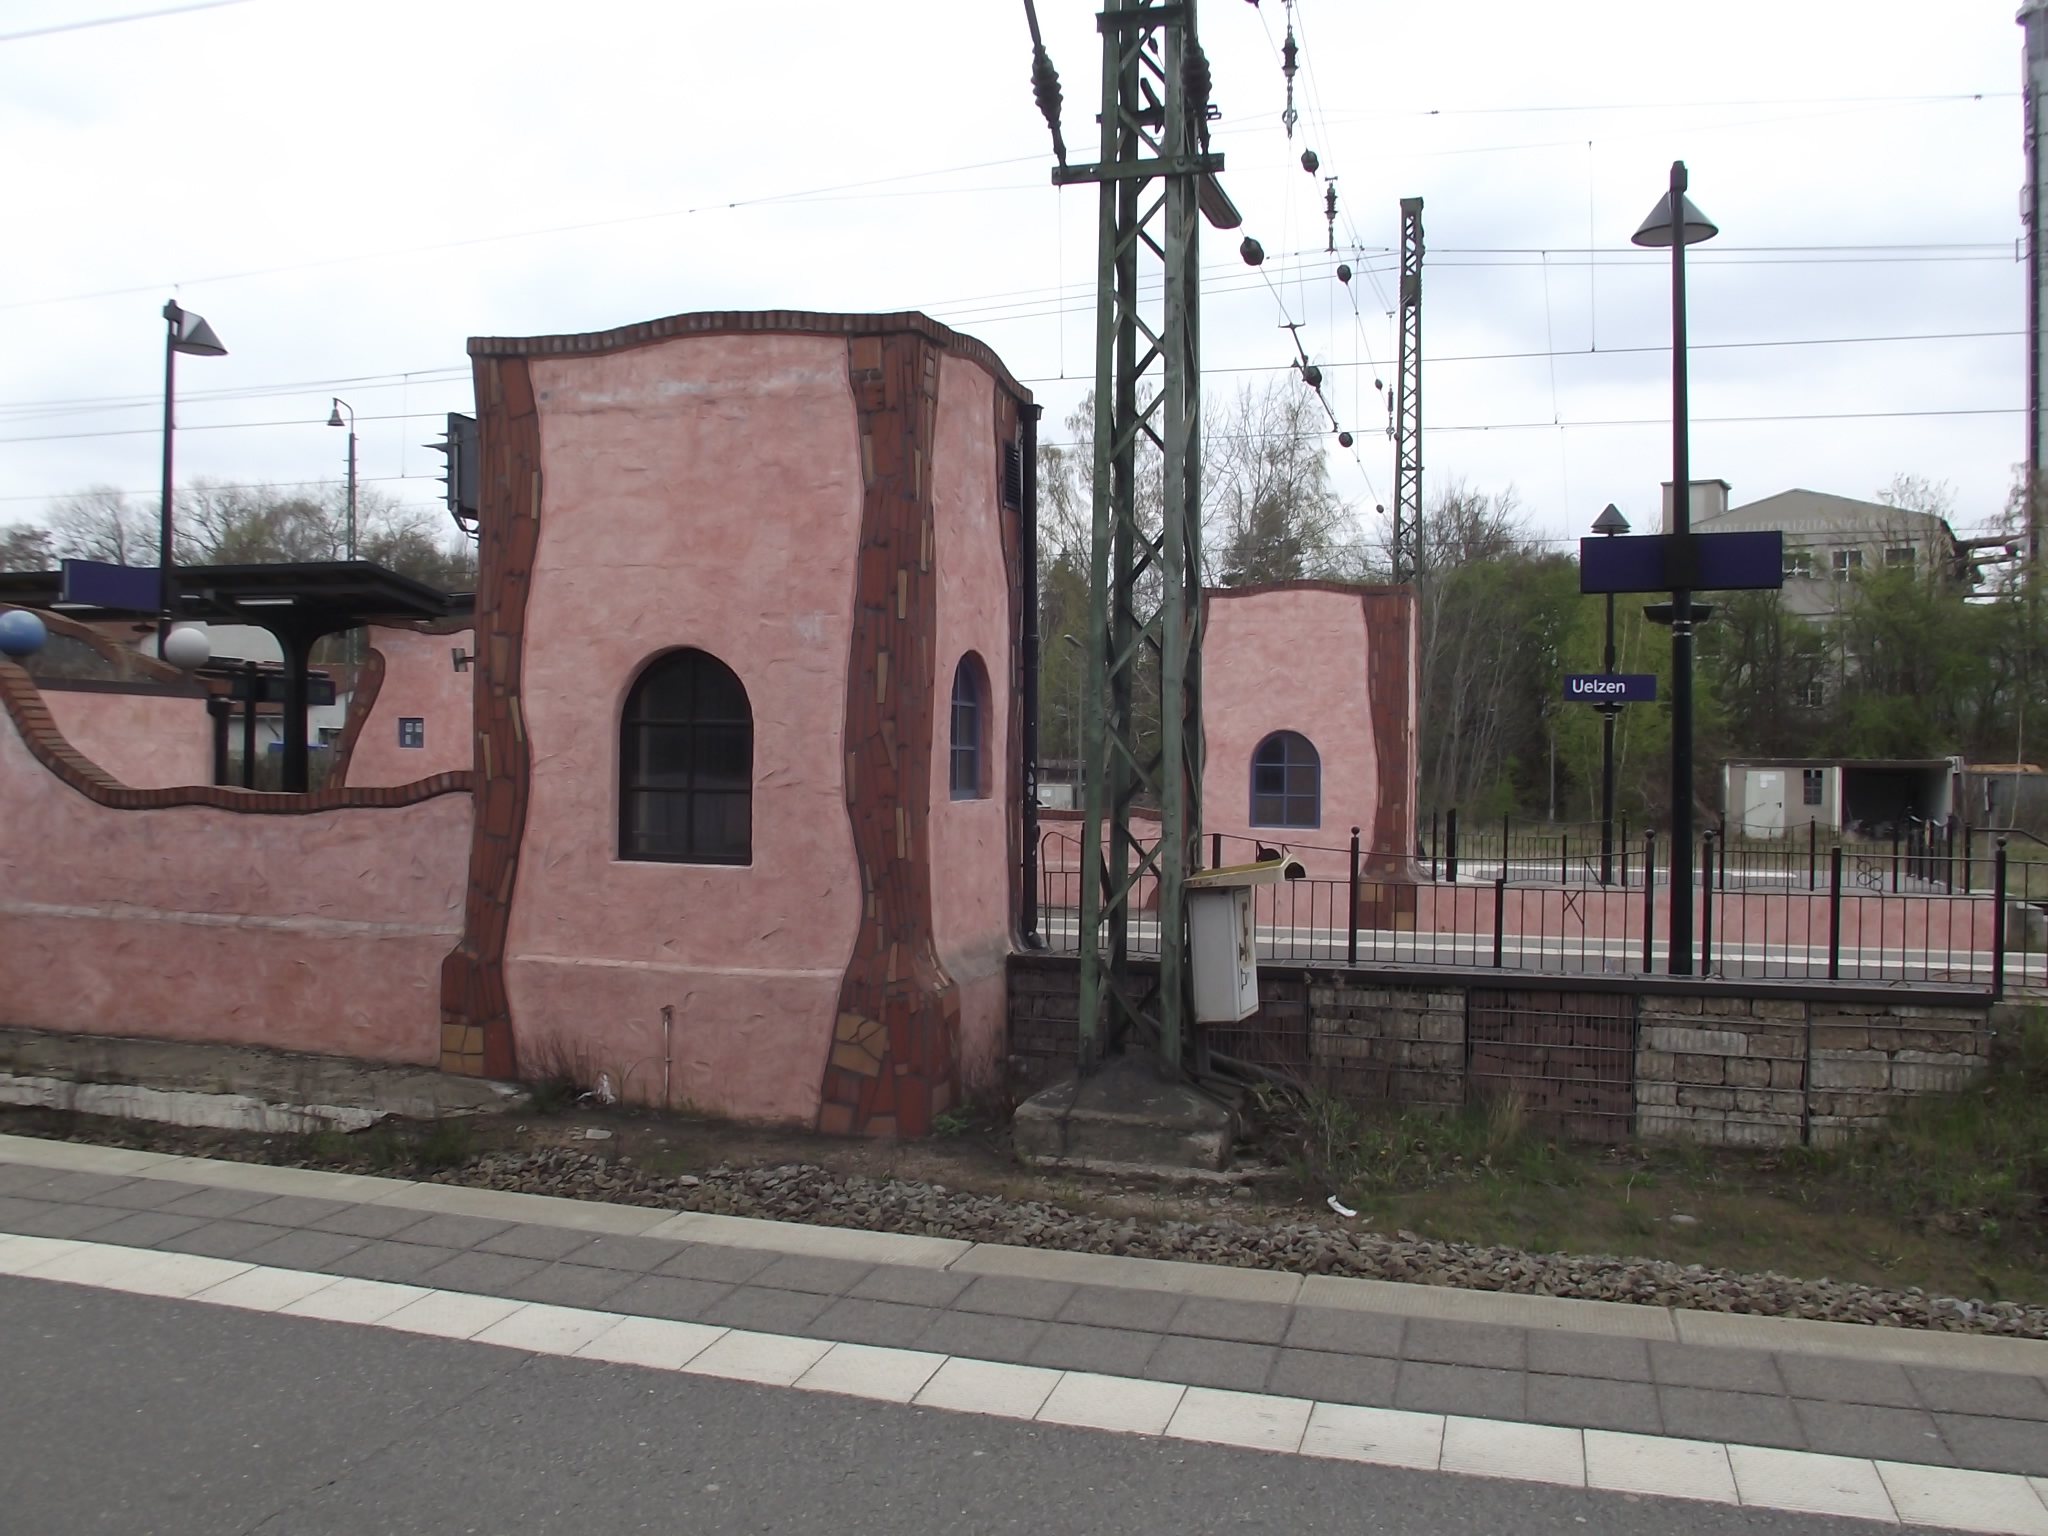 Hundertwasserbahnhof in Uelzen Expo Projekt 2000 - Die linken Gleise vom Bahnhof mit den Fahrstühlen